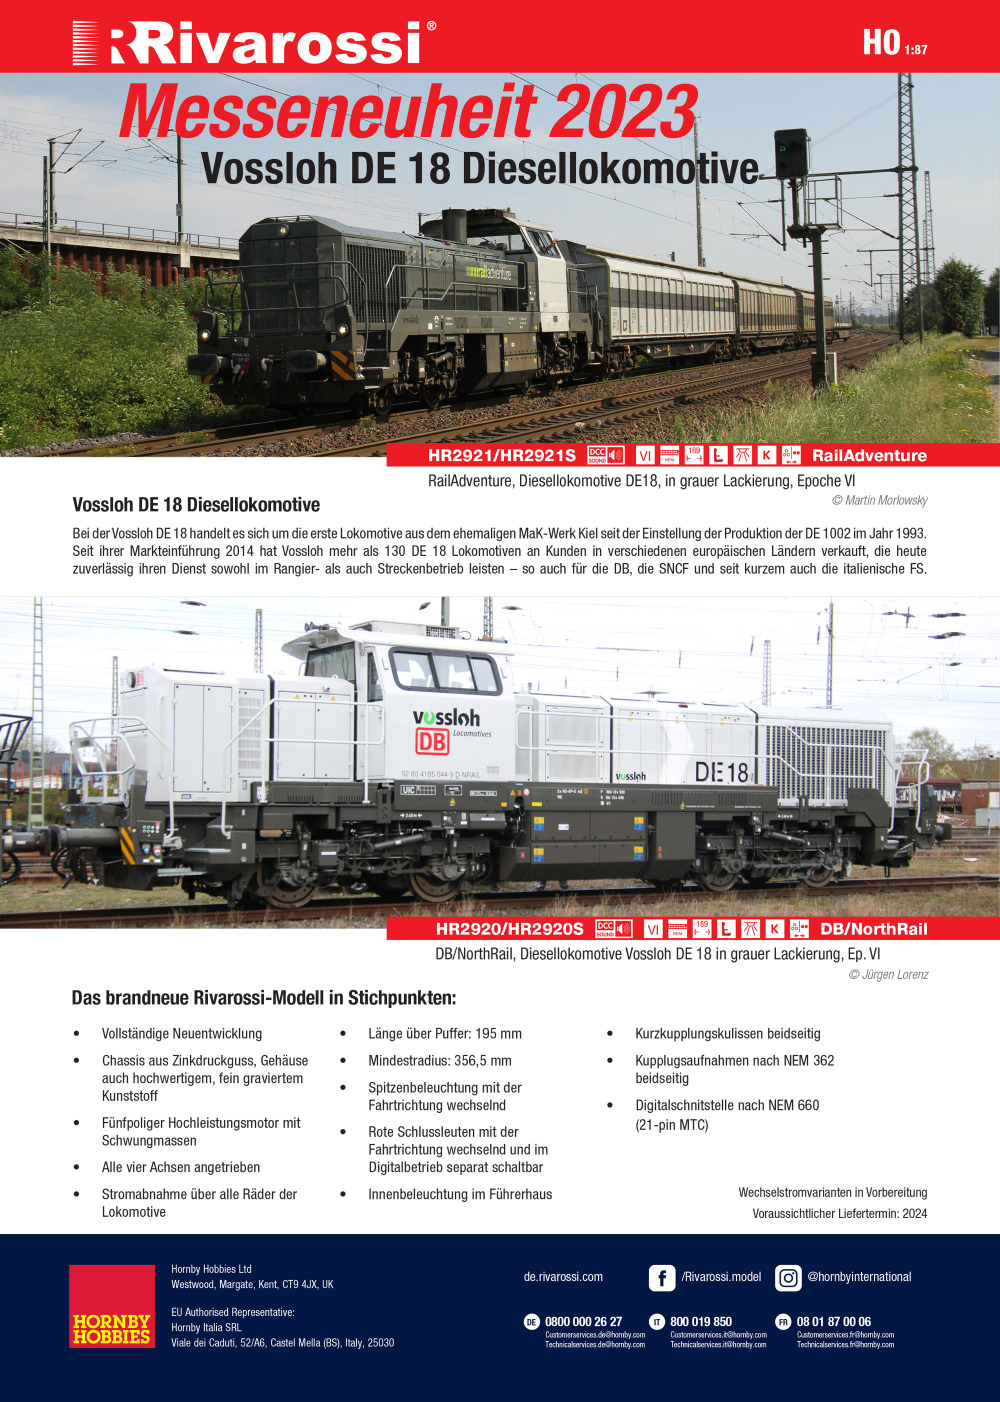 Rivarossi - Vossloh DE 18 diesel locomotive